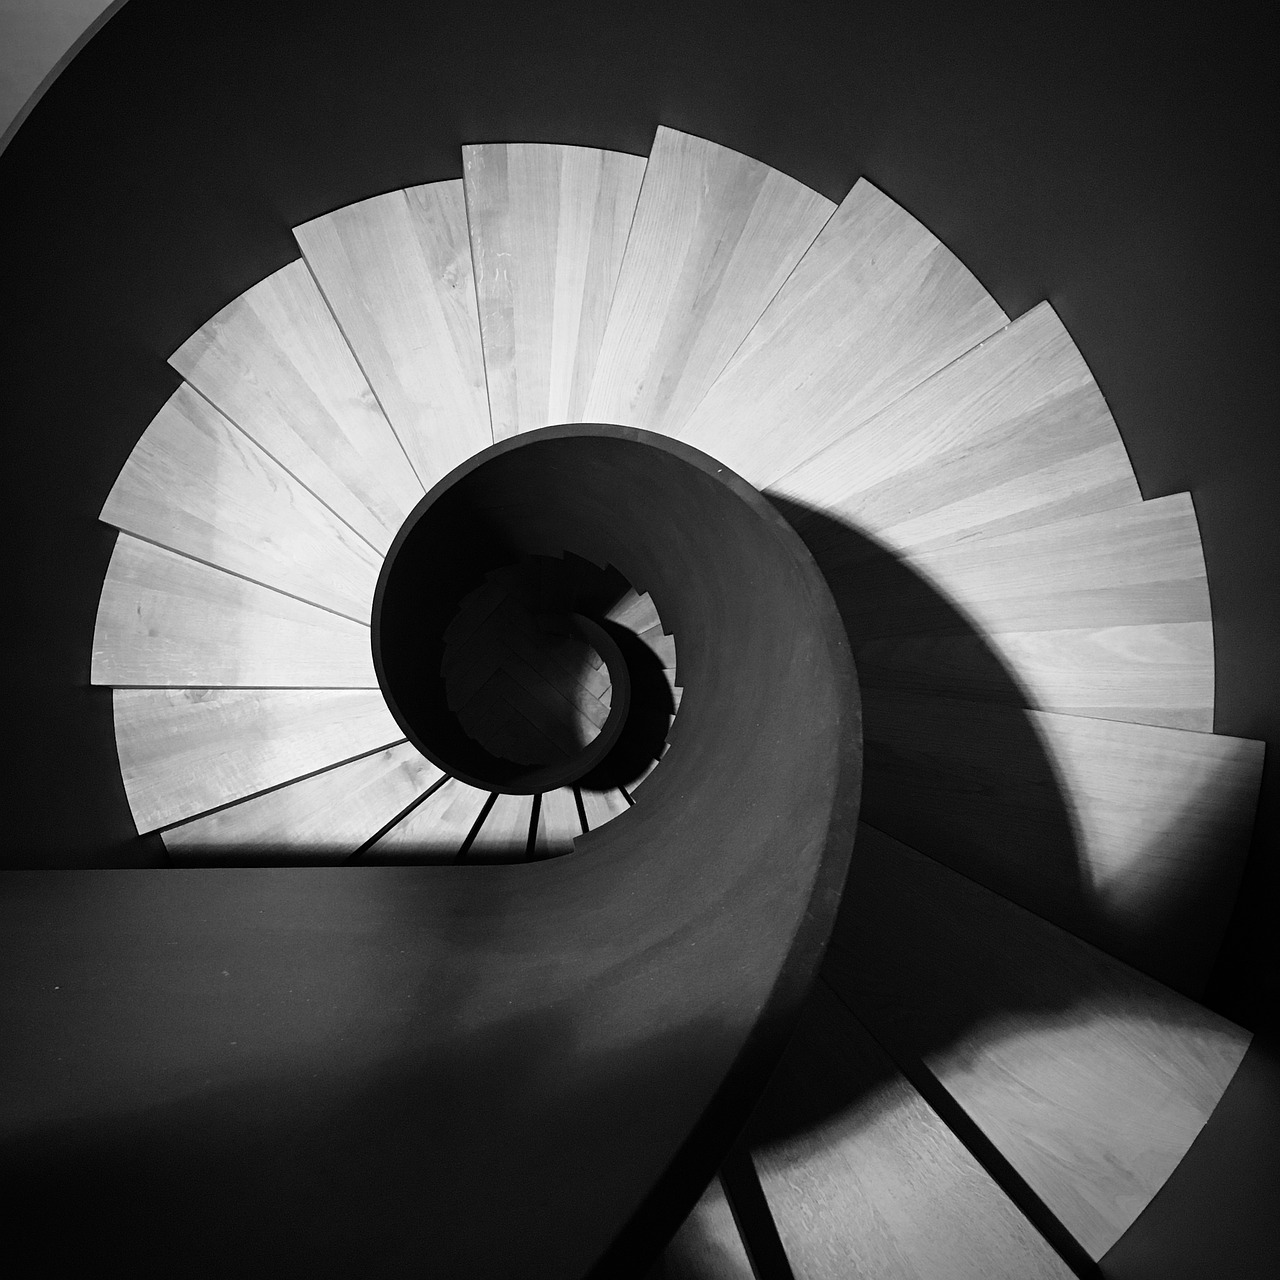 Laiptai, Juoda Ir Balta, Architektūra, Palaipsniui, Spiraliniai Laiptai, Laiptų Žingsnis, Šiuolaikiška, Laiptinė, Pakilti, Perspektyva